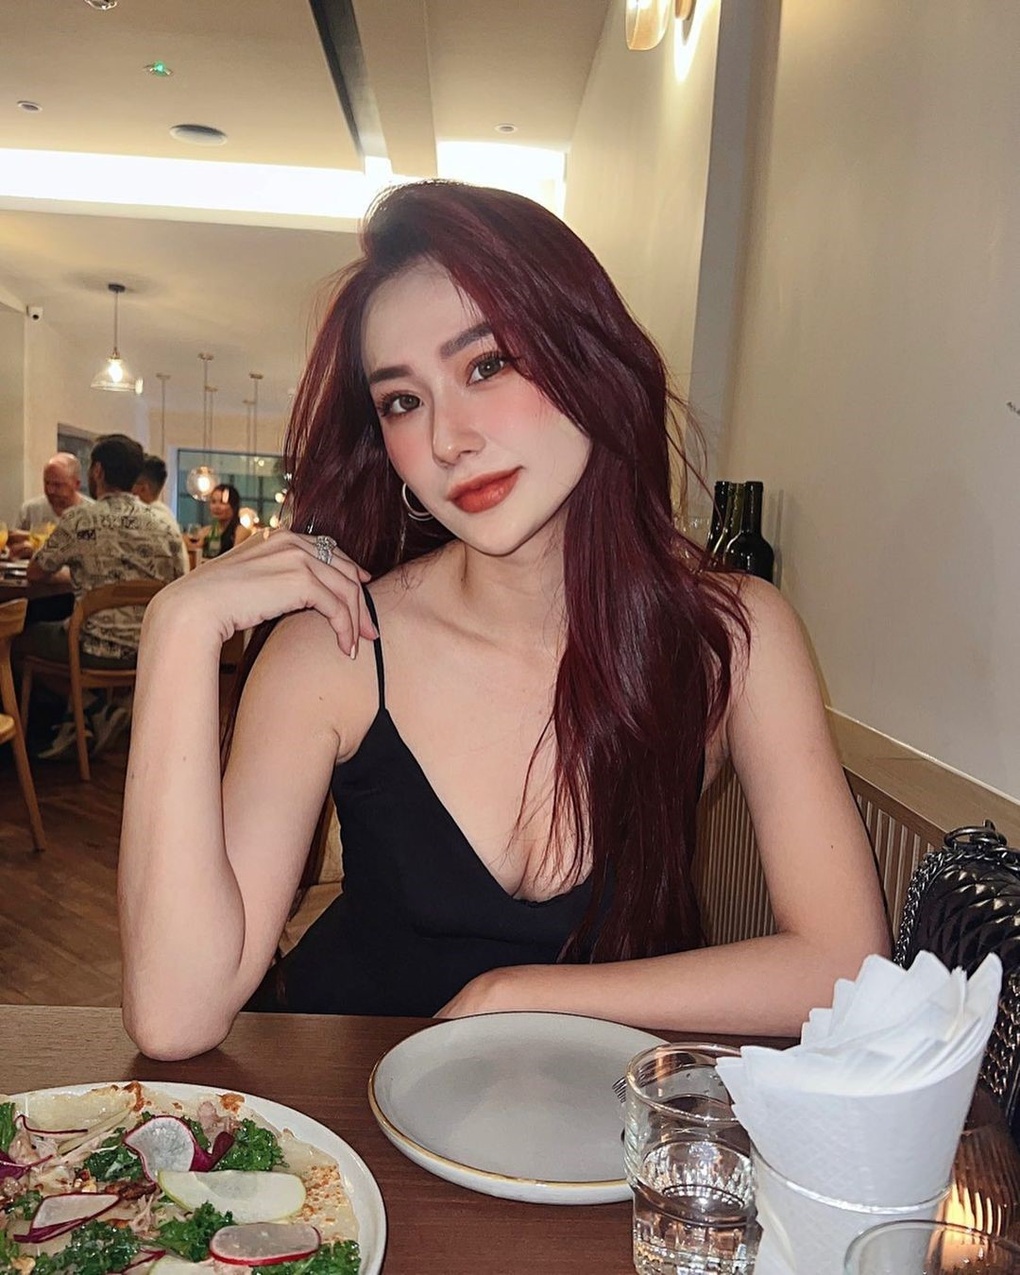 Bạn gái mới của cầu thủ Văn Thanh trông xinh đẹp, nóng bỏng - 2